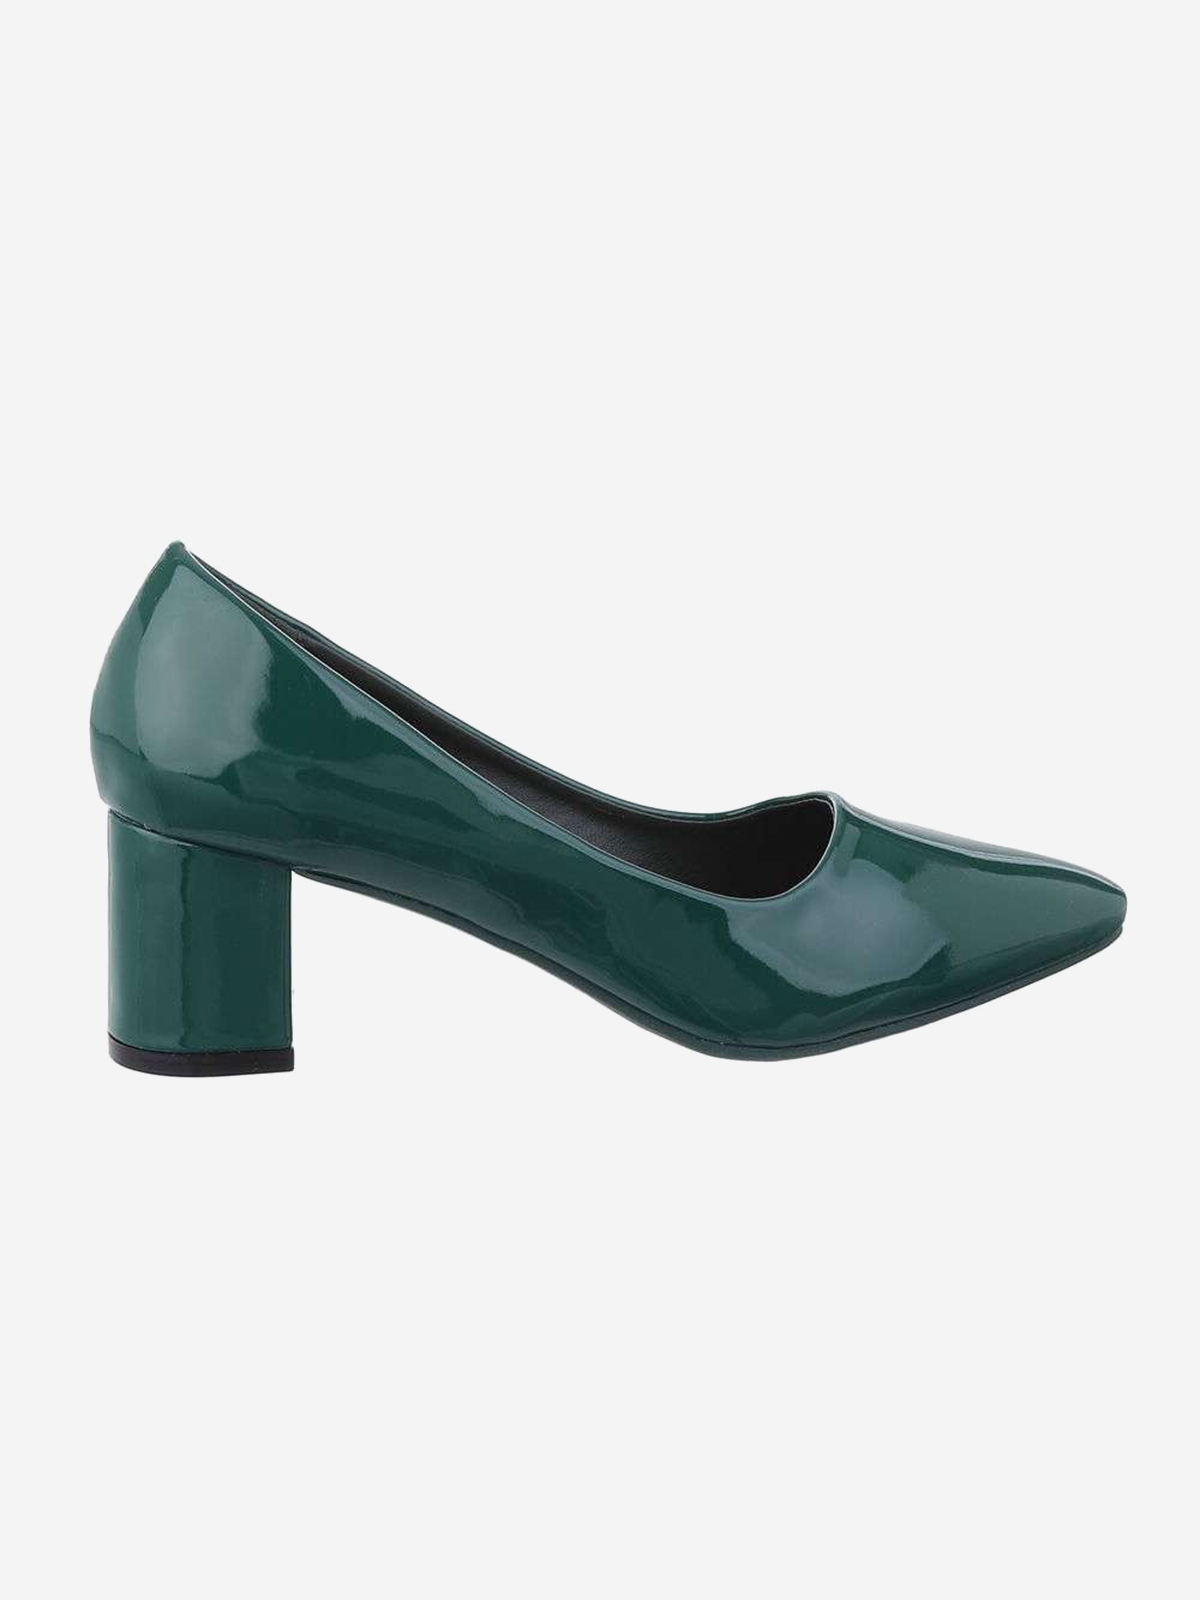 Women's elegant shoes in green